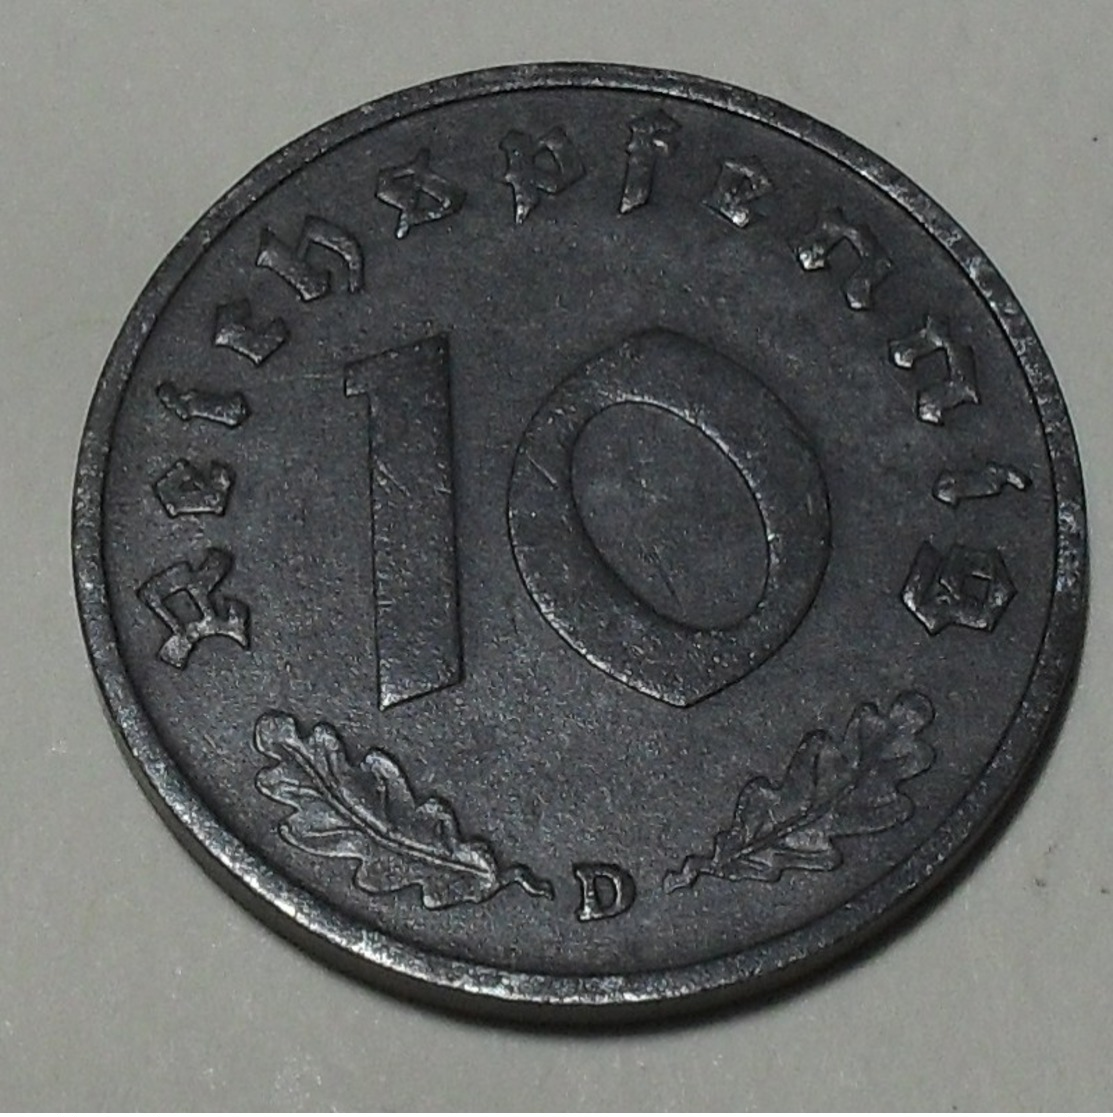 1940 - Allemagne - Germany - III Reich - 10 REICHSPFENNIG, (D), KM 101 - 10 Reichspfennig